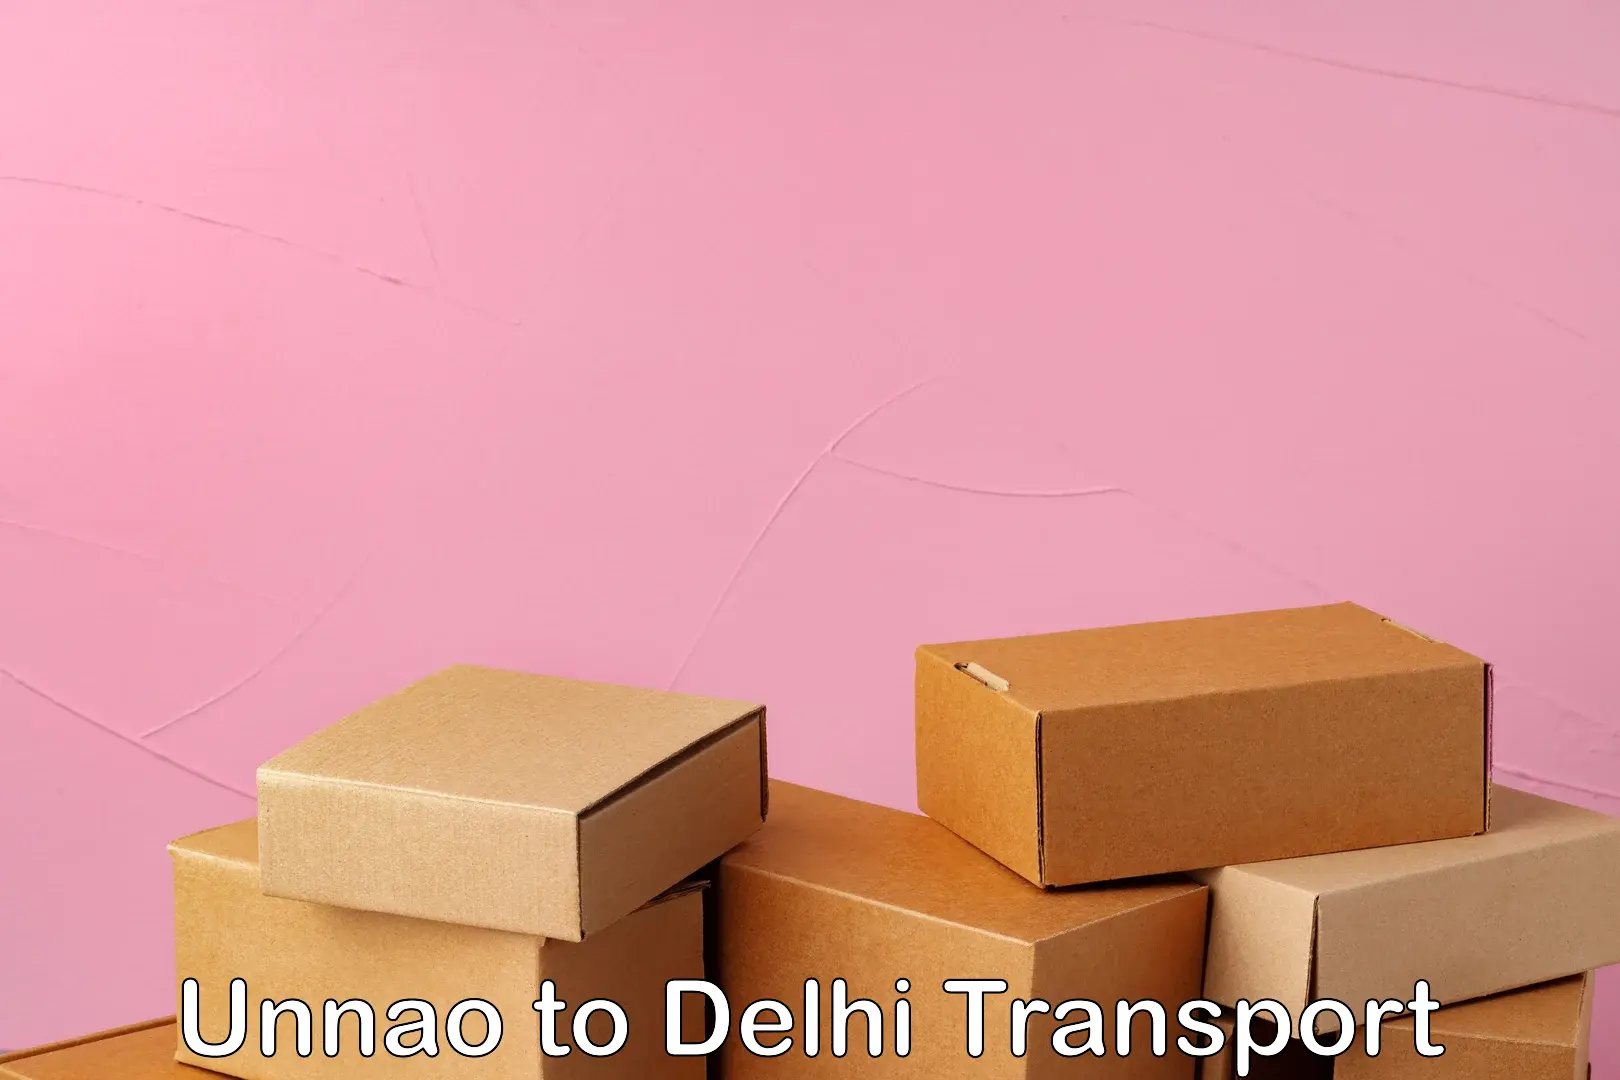 Delivery service Unnao to Delhi